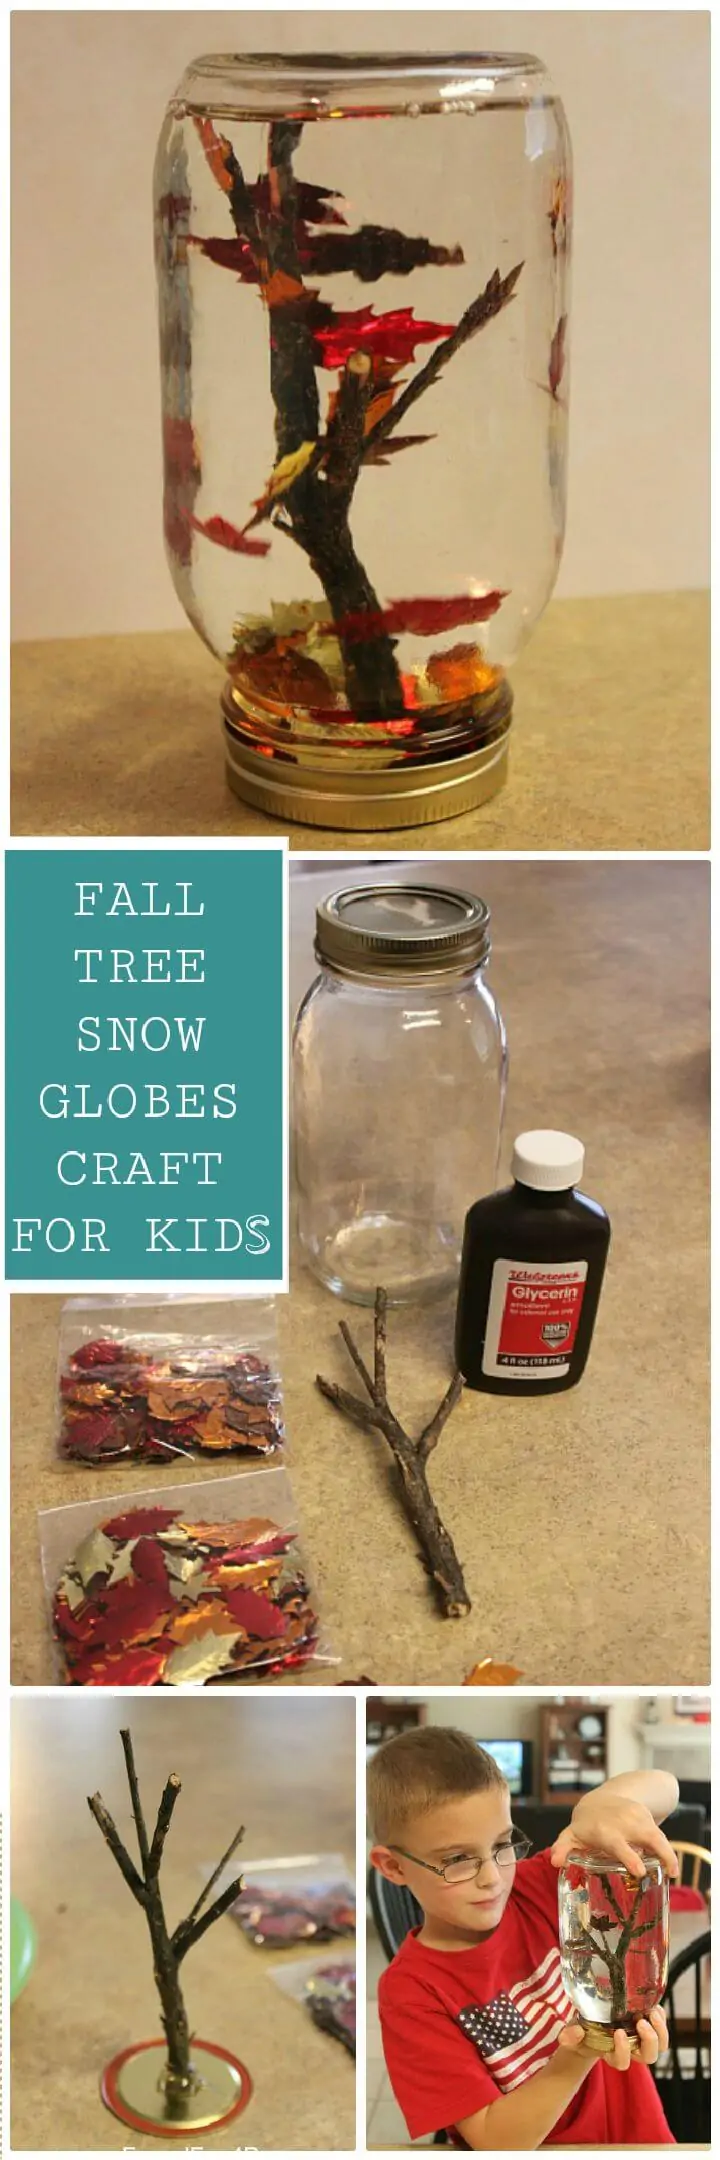 DIY Fall Tree Snow Globes Craft para niños